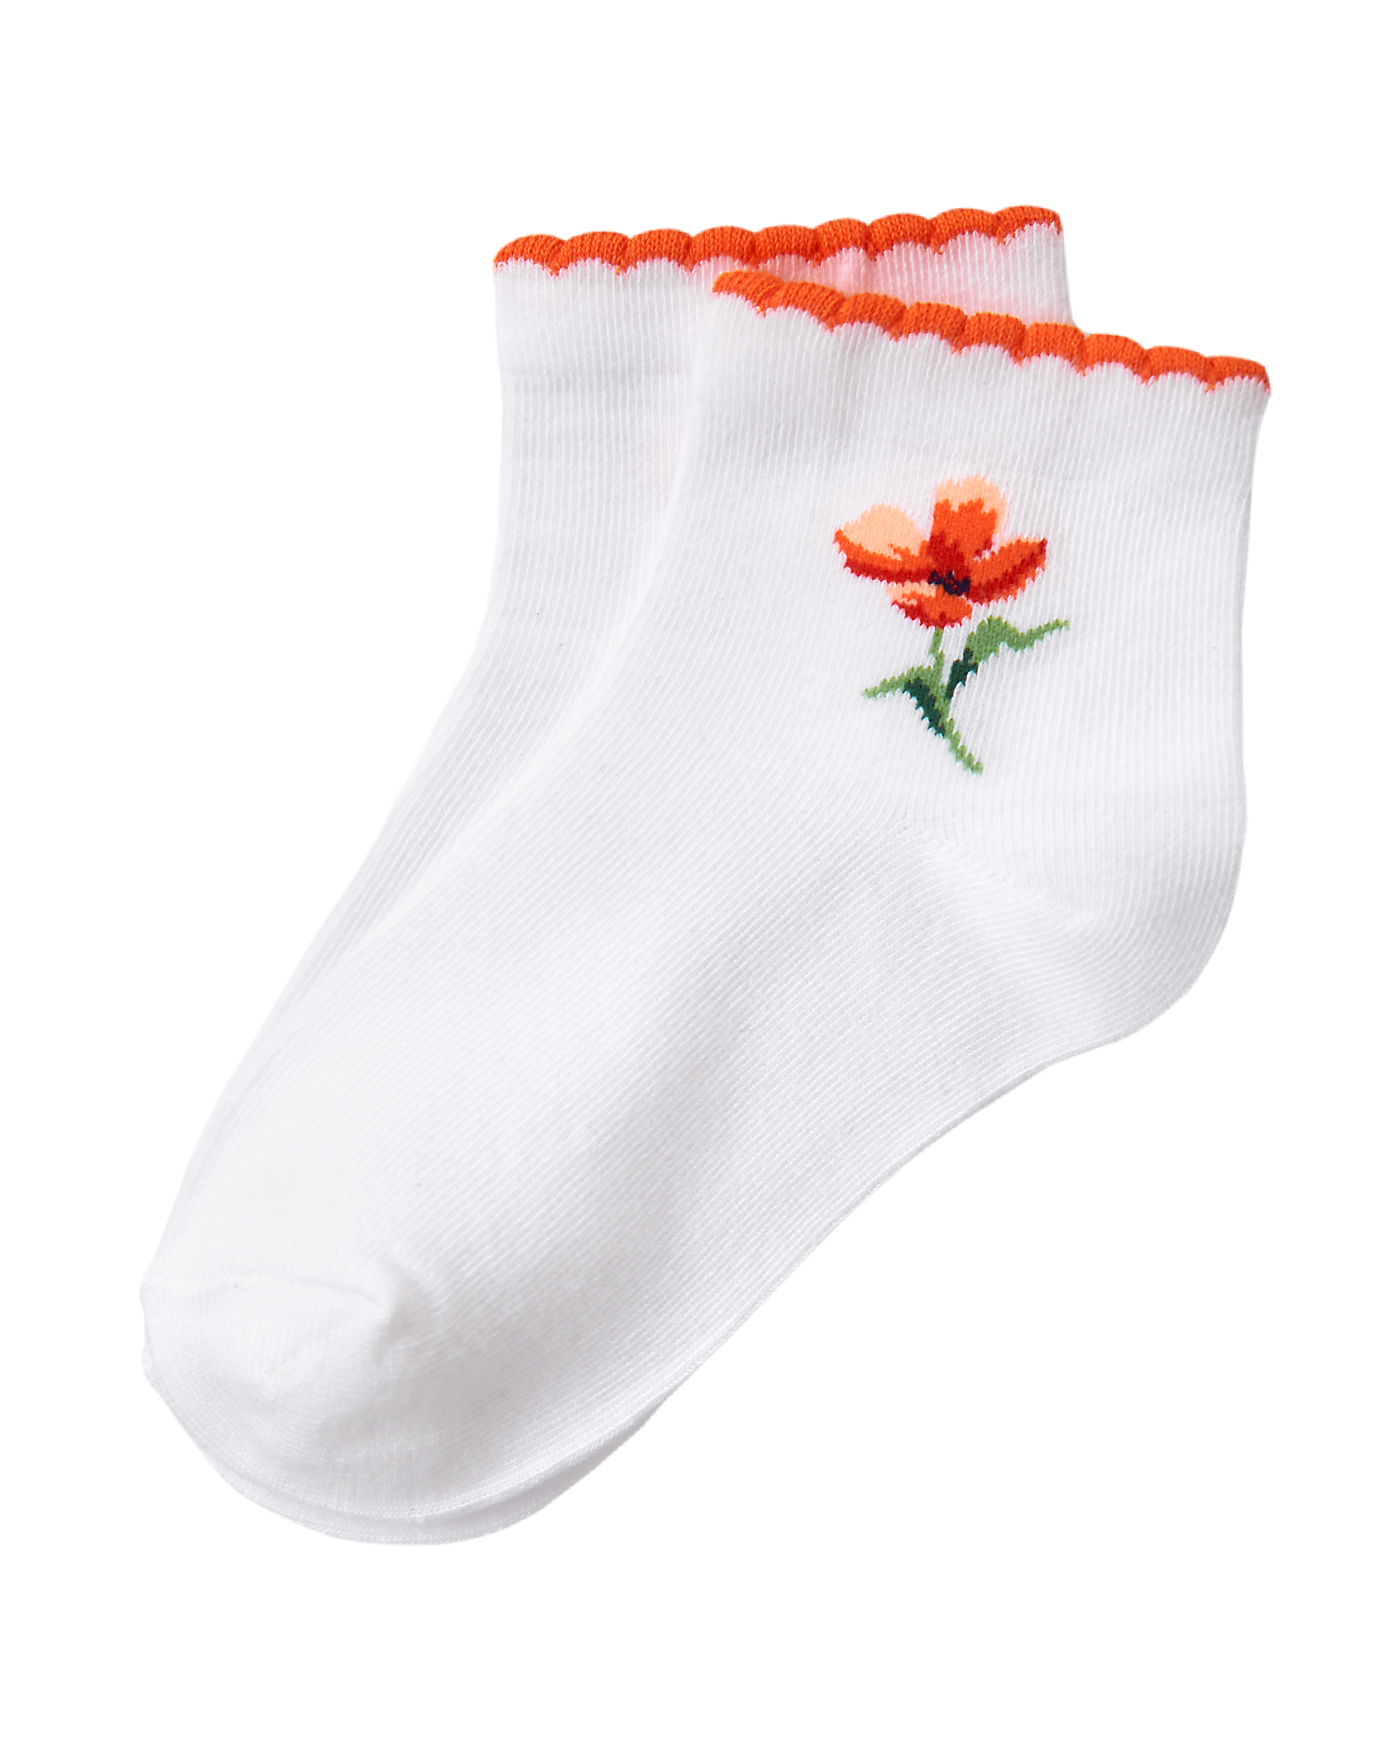 Flower Sock image number 0